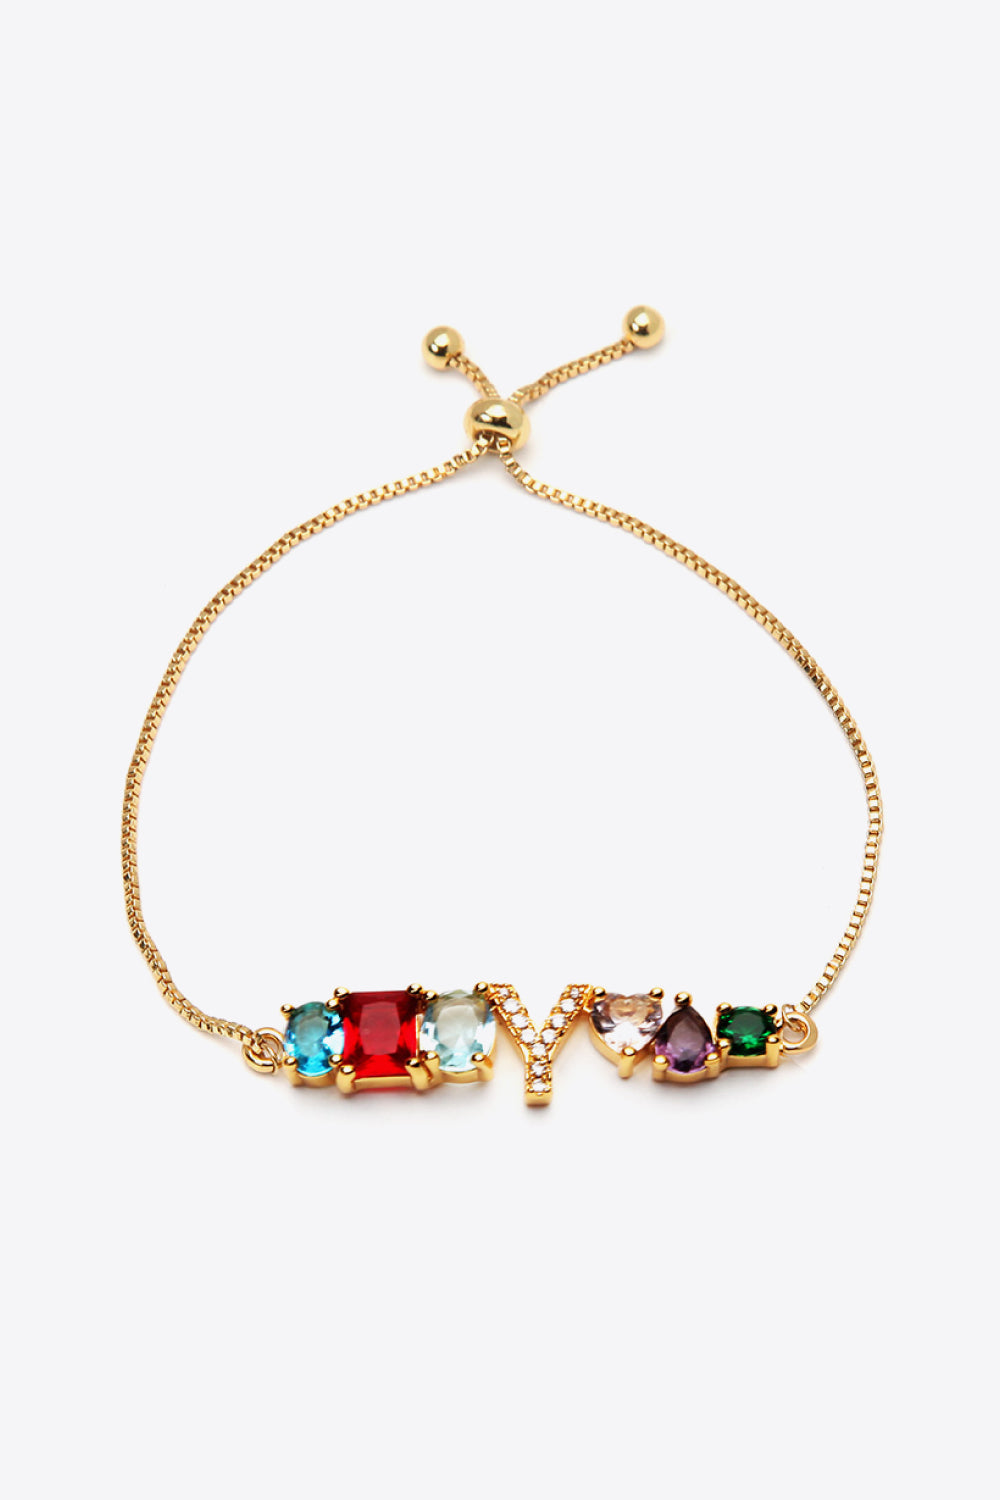 U to Z Zircon Bracelet - Y / One Size - Women’s Jewelry - Bracelets - 13 - 2024